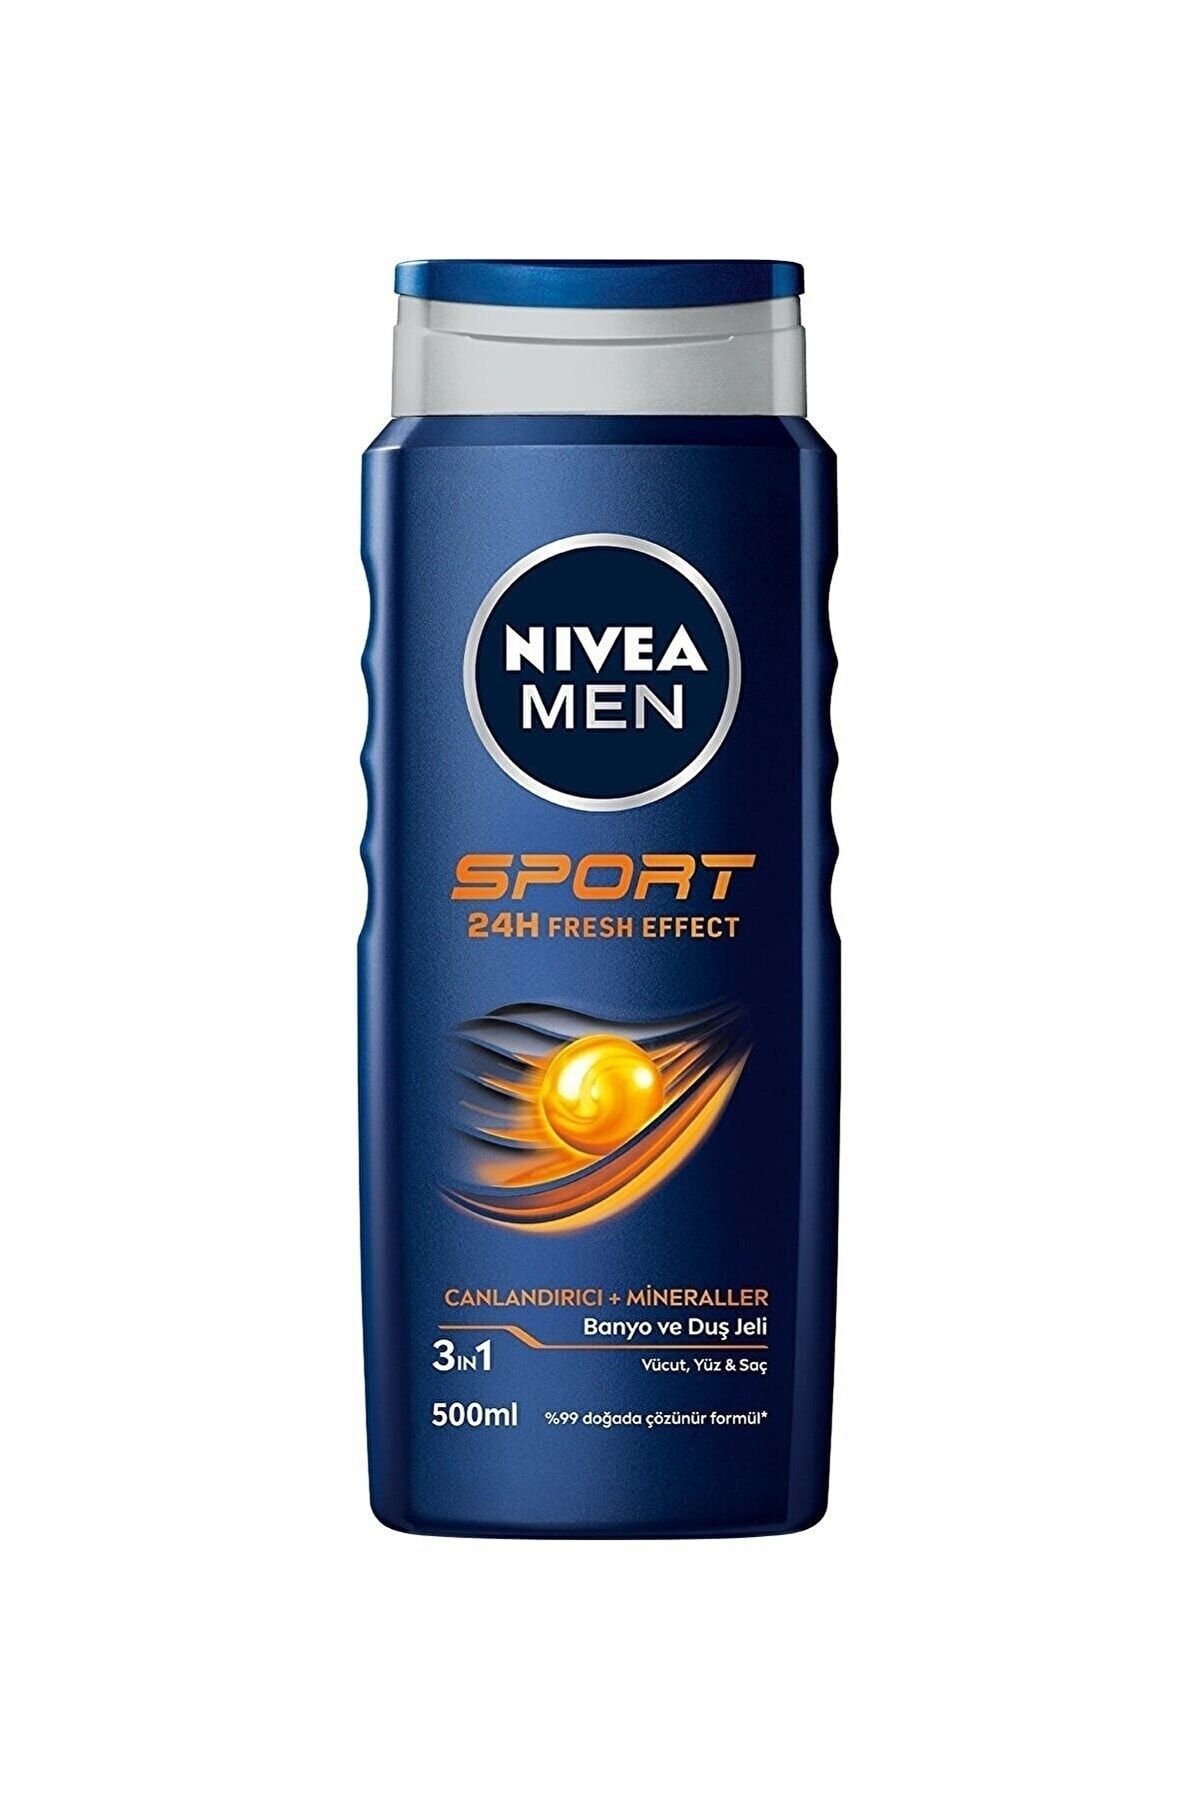 NIVEA Men Sport - Erkekler Için Canlandırıcı Saç Ve Vücut Şampuanı 500ml 1 Adet